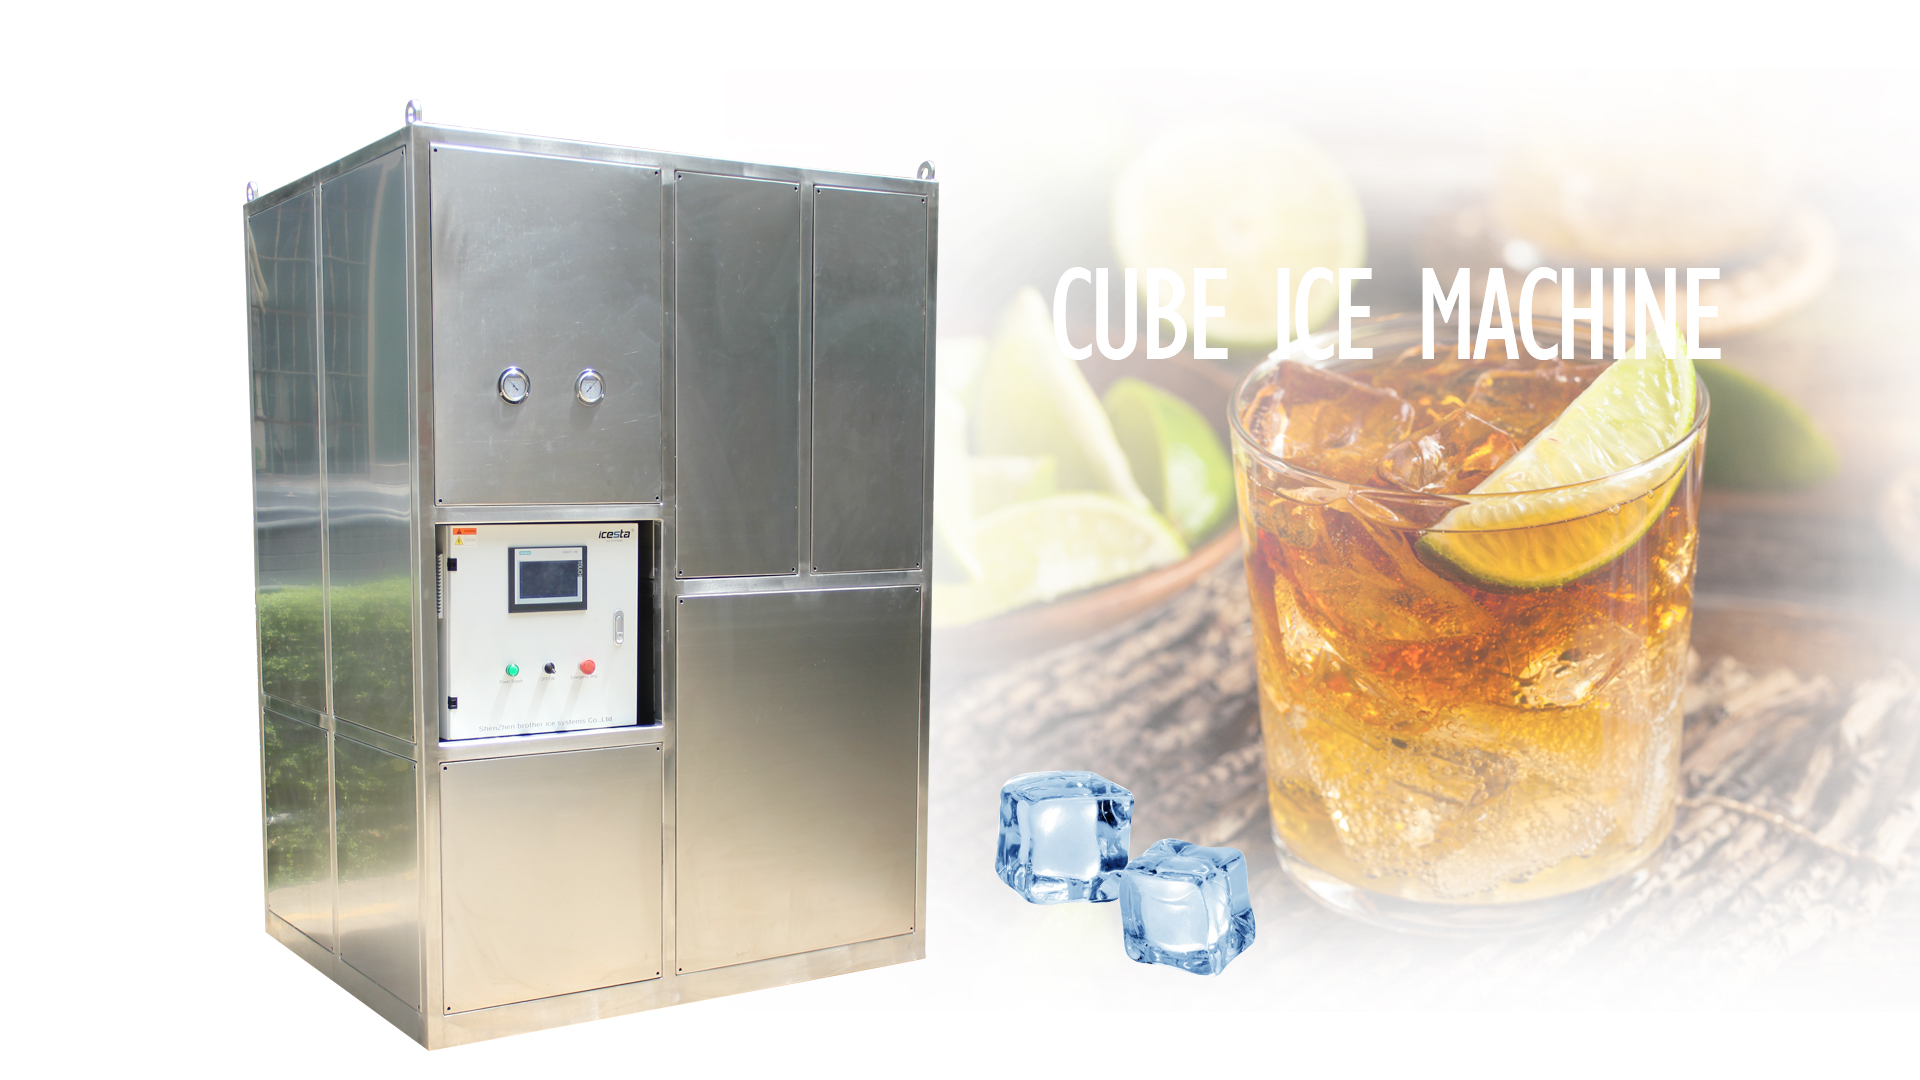 Cube Ice Machine Agua de enfriamiento Alta productividad 1Ton/Día Producto caliente personalizado en ICesta $ 8000- $ 12000